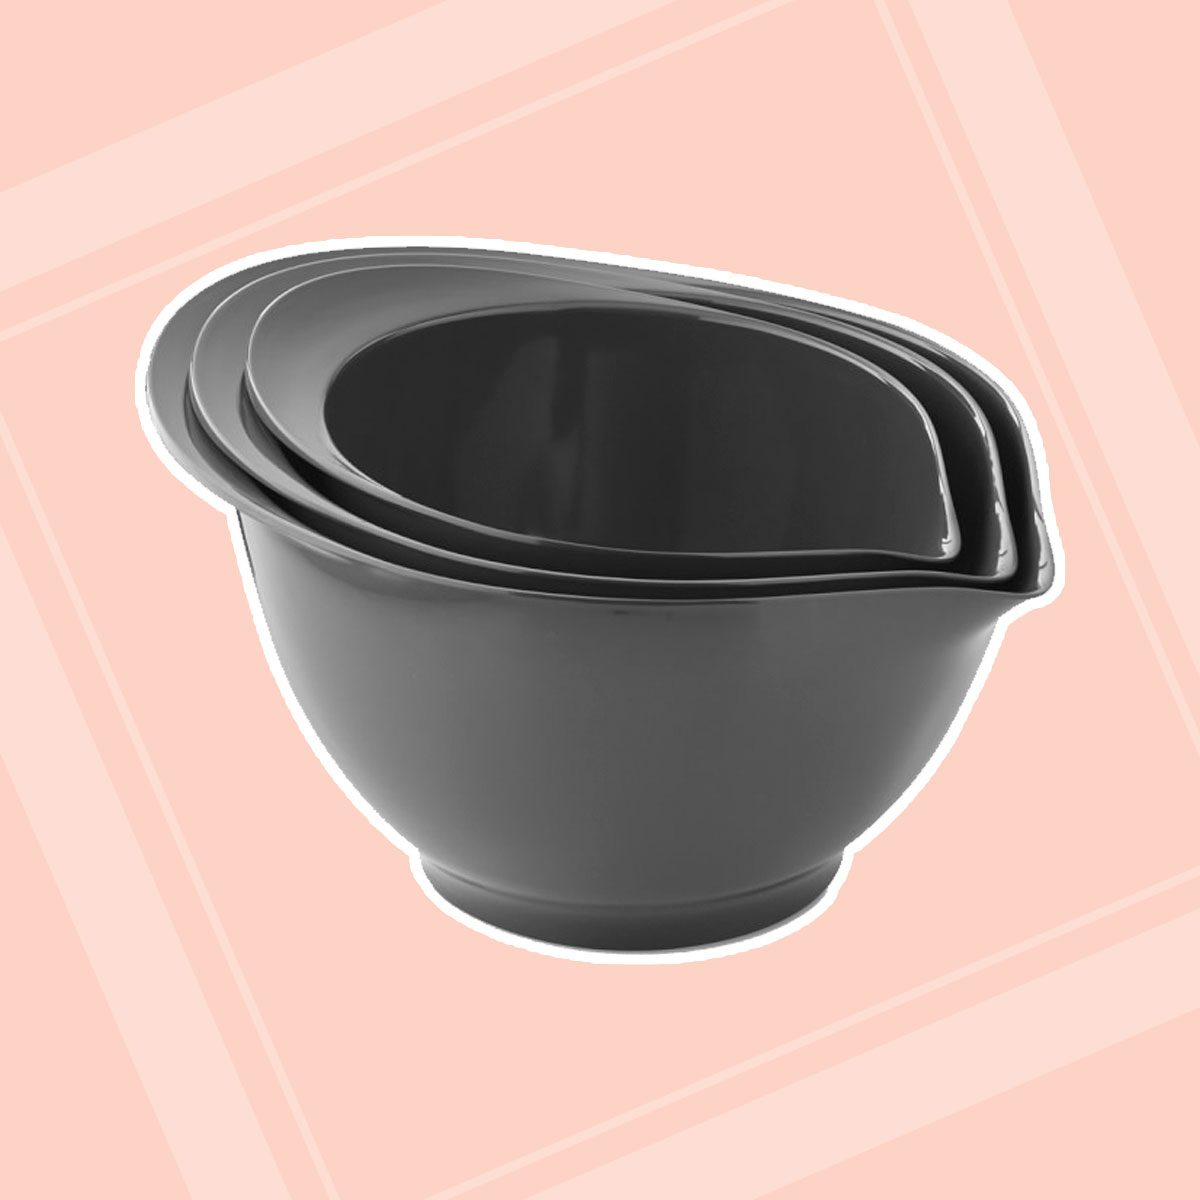 Comfy Grip Black Plastic 3-Piece Mixing Bowl Set - with Pour Spout - 1  count box